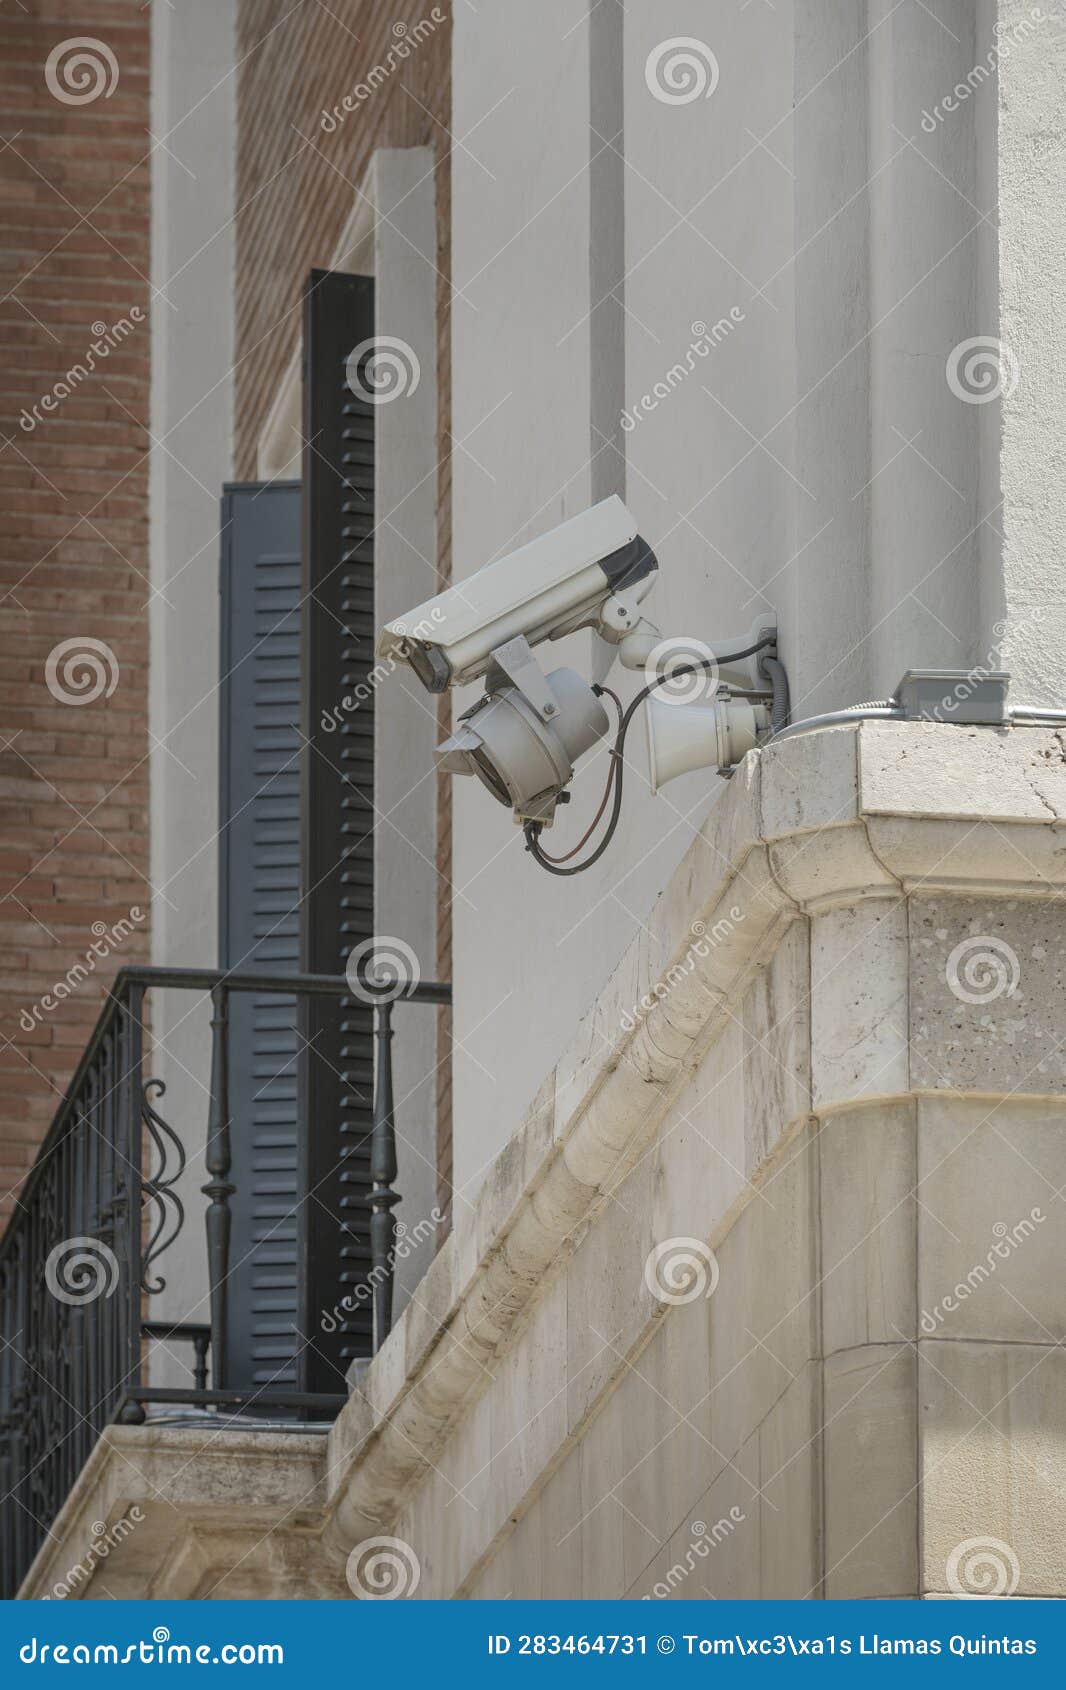 cÃÂ¡maras de vigilancia instaladas en la fachada